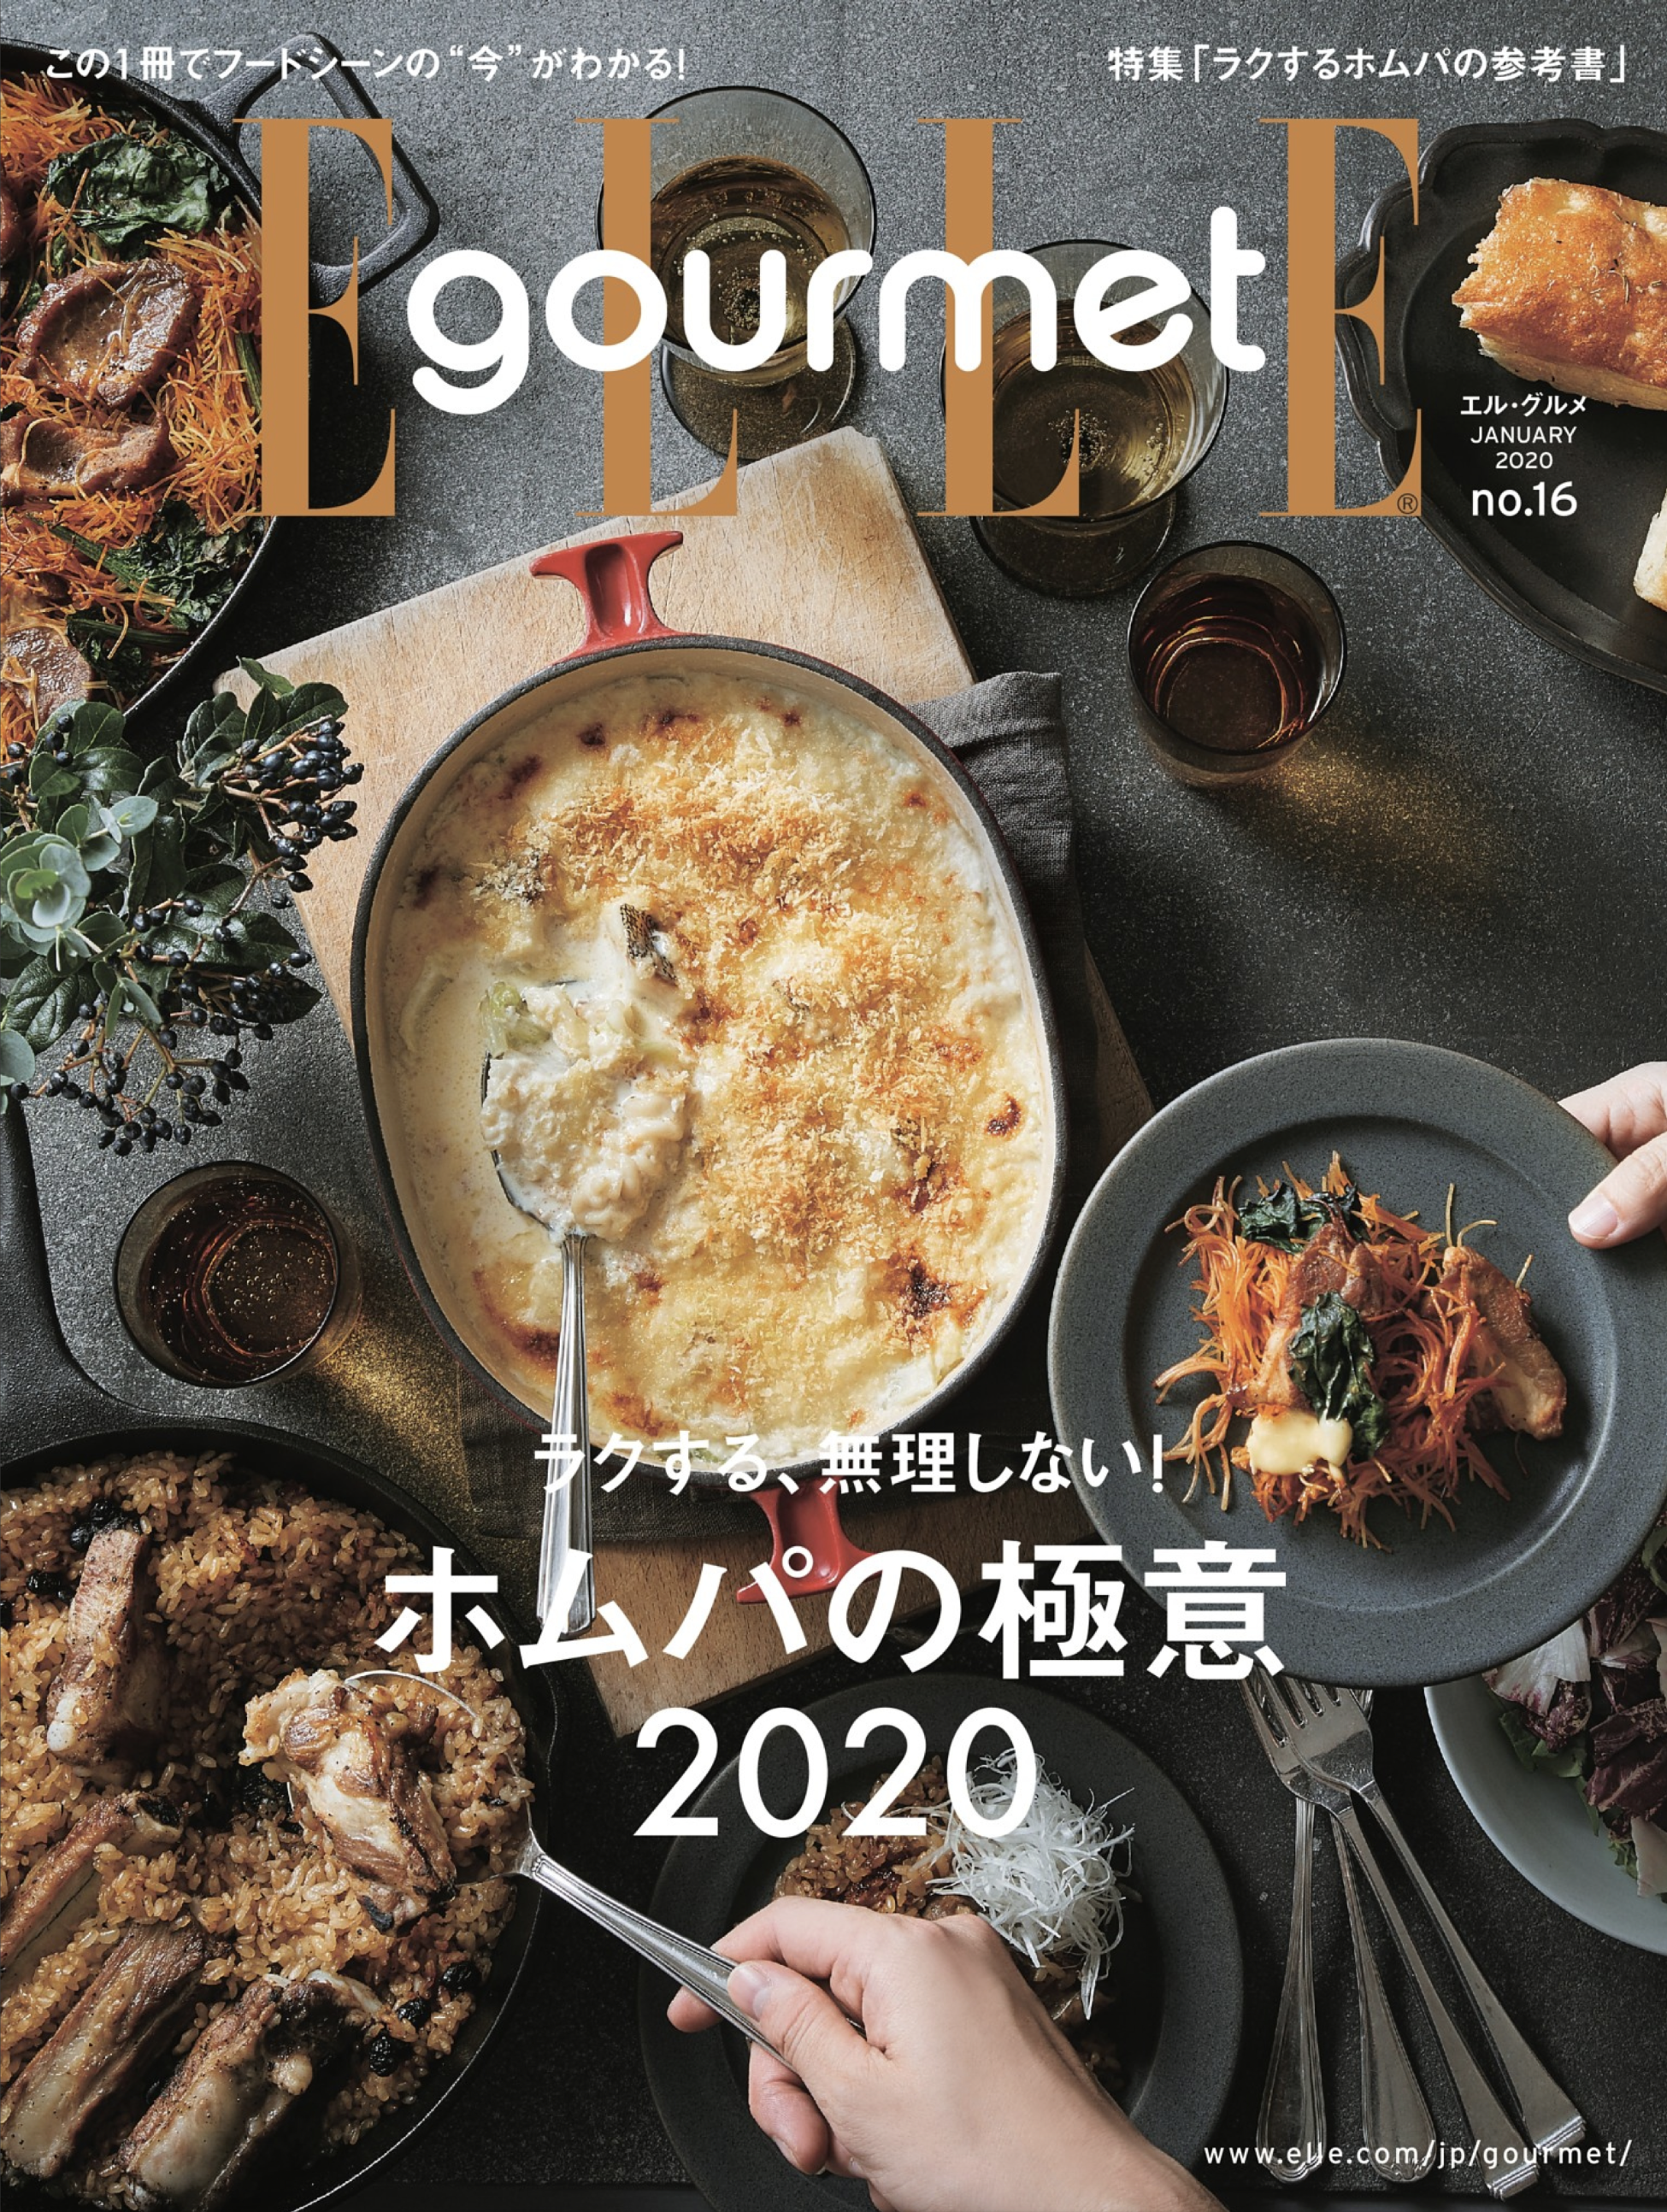 大木慎太郎がELLE gourmet 1月号の表紙 中ページを撮りおろしました